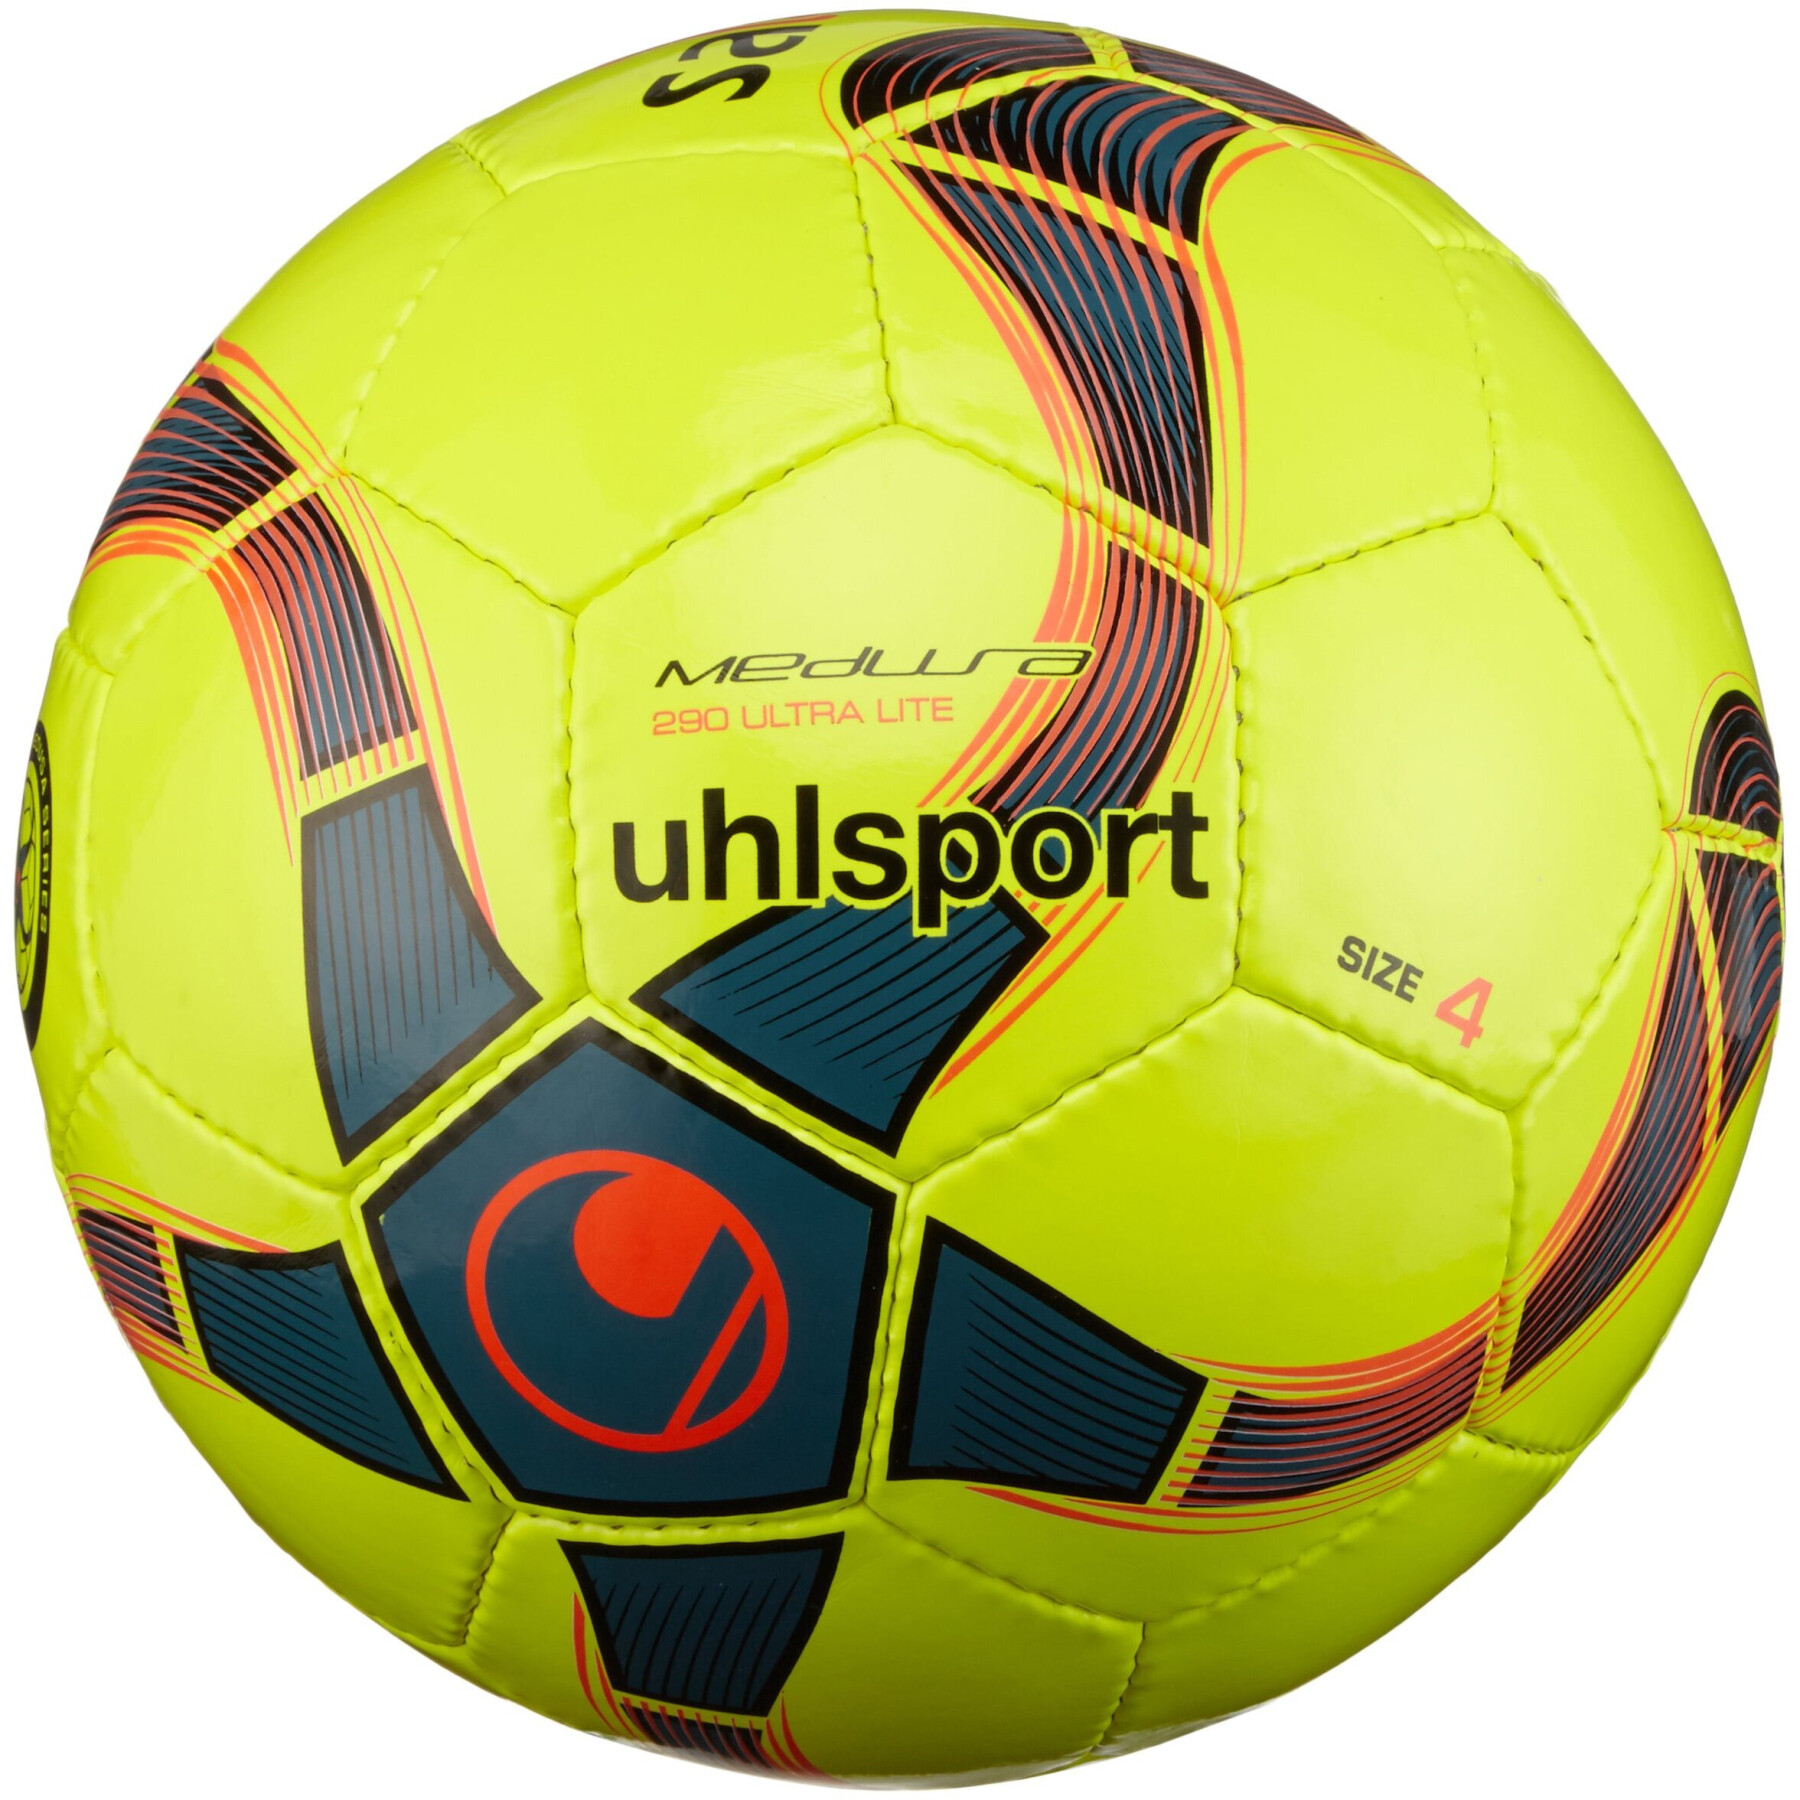 Balloon Uhlsport Futsal Anteo 290 Ultra Lite